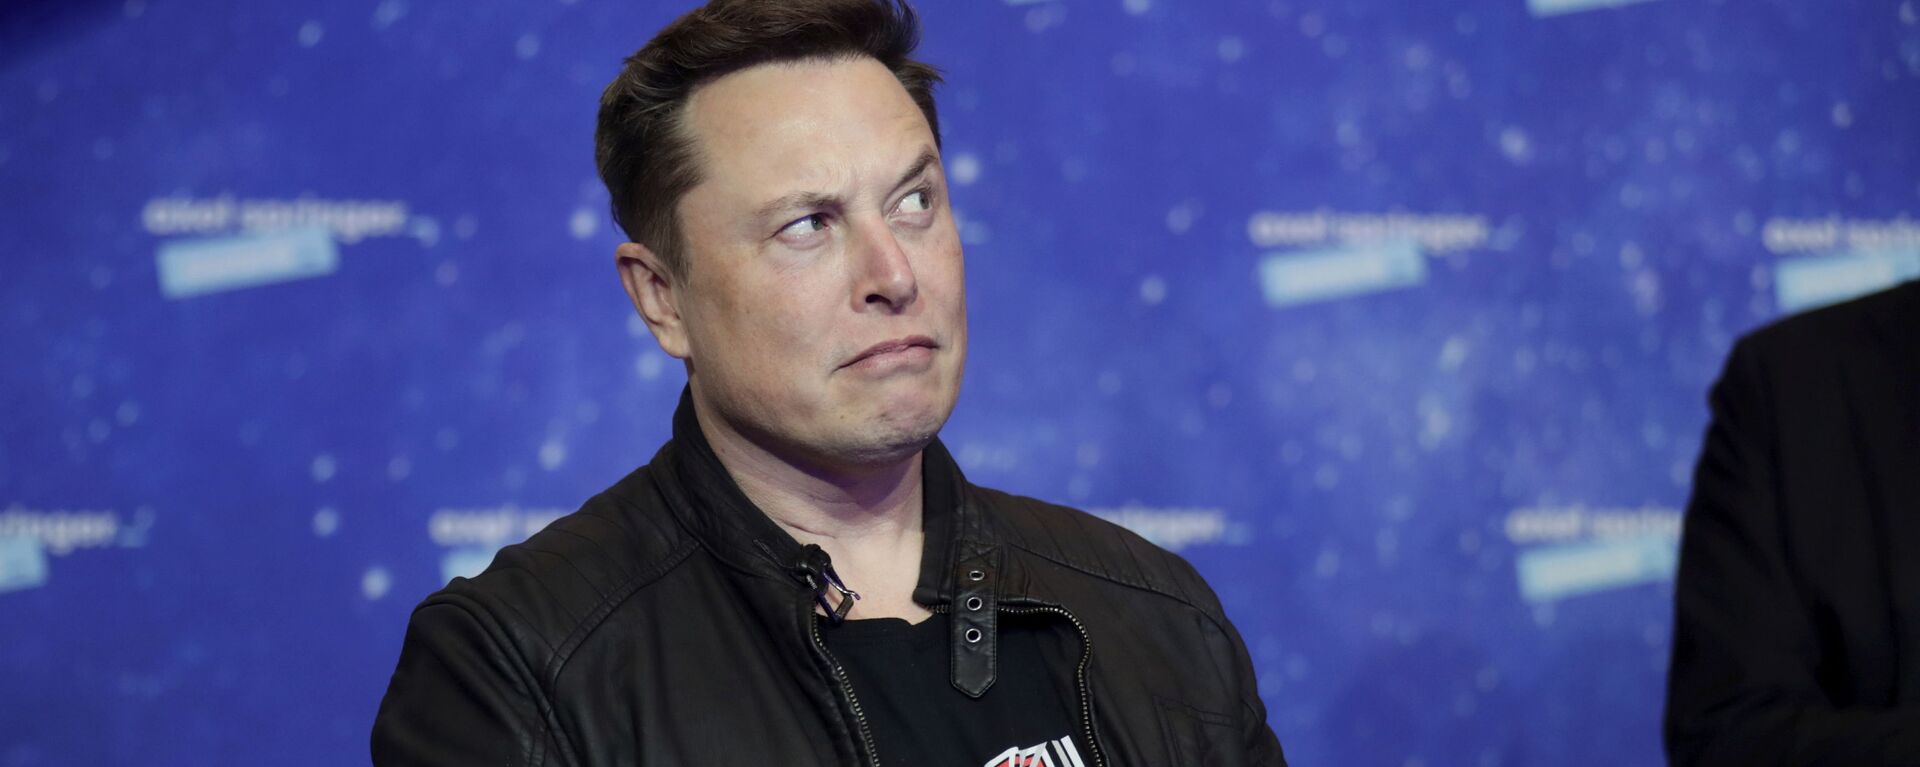 Chủ sở hữu SpaceX và Giám đốc điều hành Tesla, Elon Musk, đến trên thảm đỏ cho giải thưởng truyền thông Axel Springer, ở Berlin, Đức, thứ Ba, ngày 1 tháng 12 năm 2020. - Sputnik Việt Nam, 1920, 10.03.2021